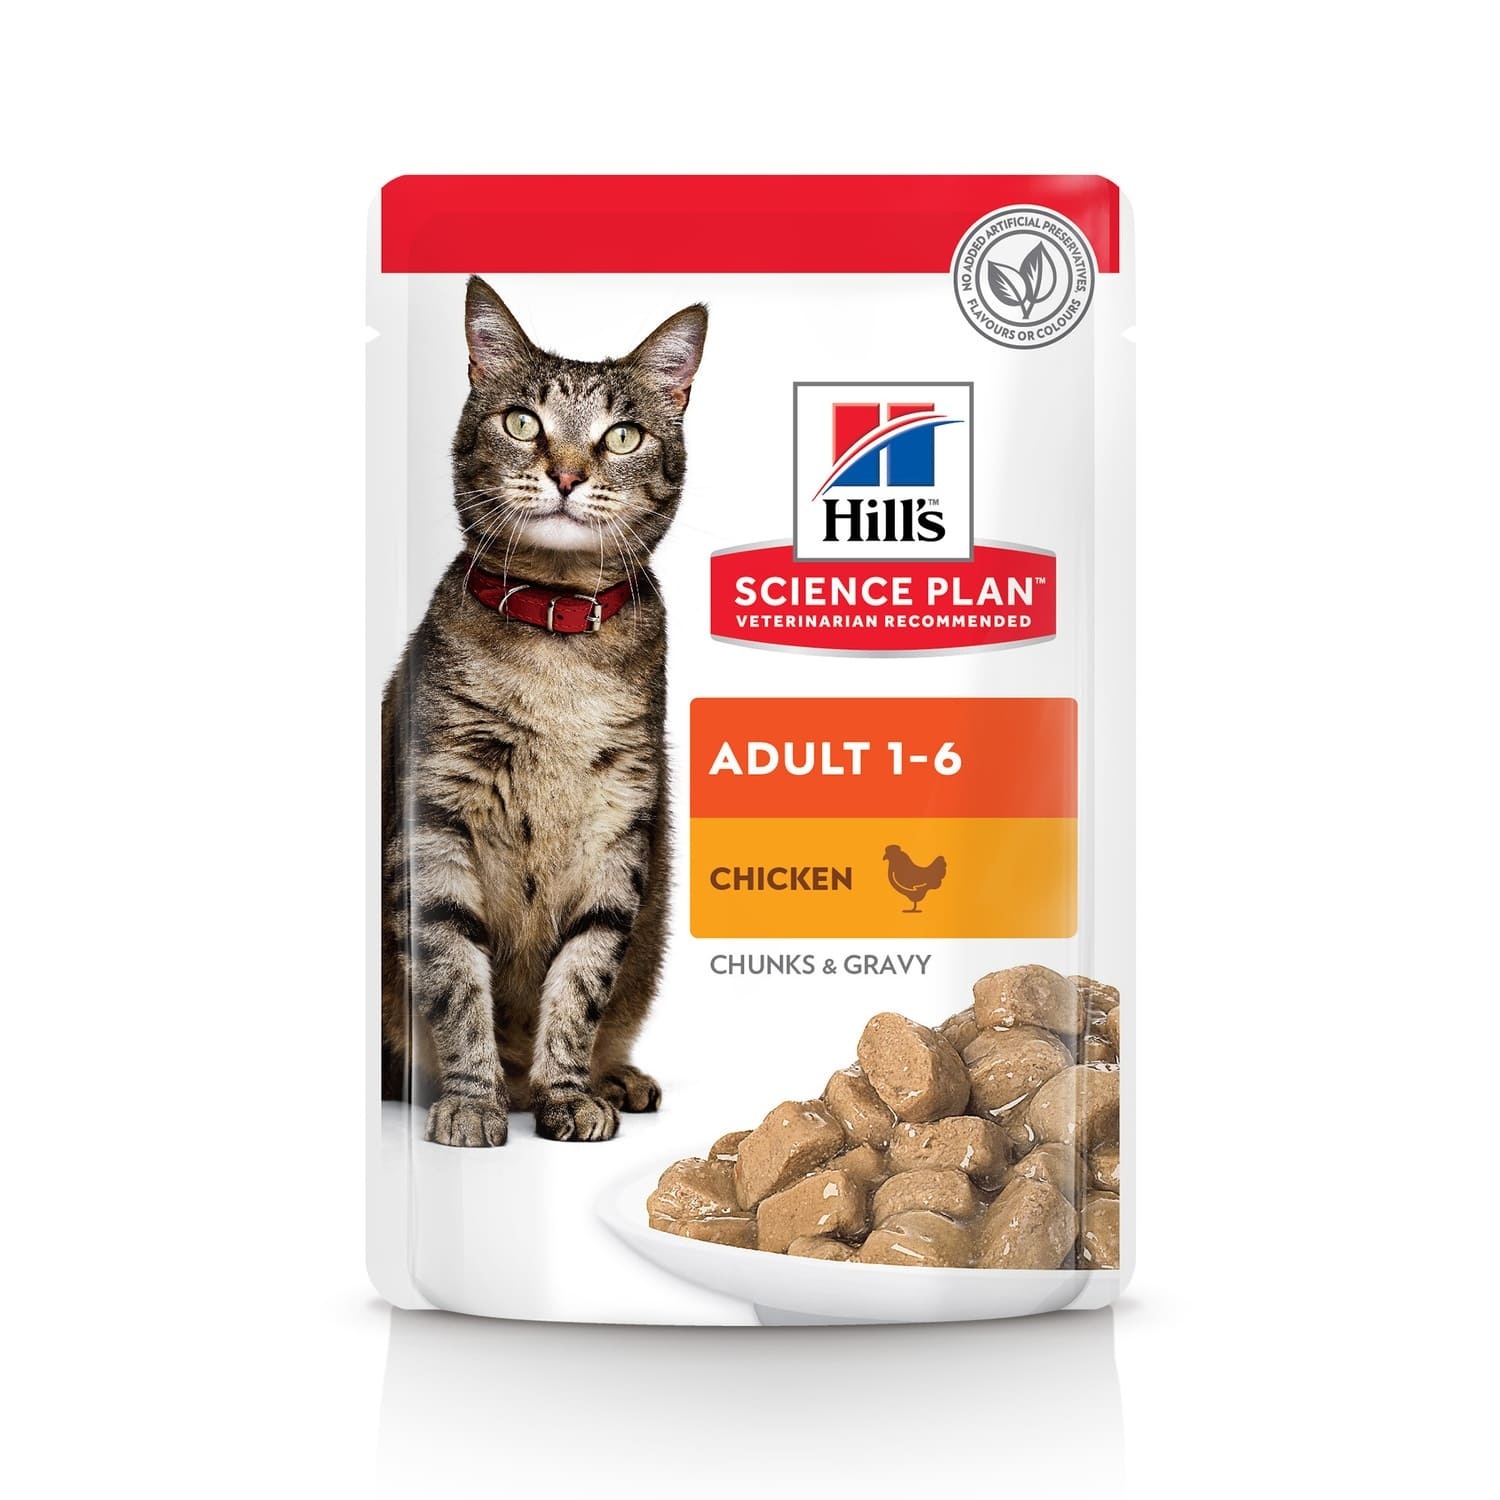 Hill's консервы science Plan для взрослых кошек для поддержания жизненной энергии и иммунитета, пауч с курицей в соусе (1,02 кг)